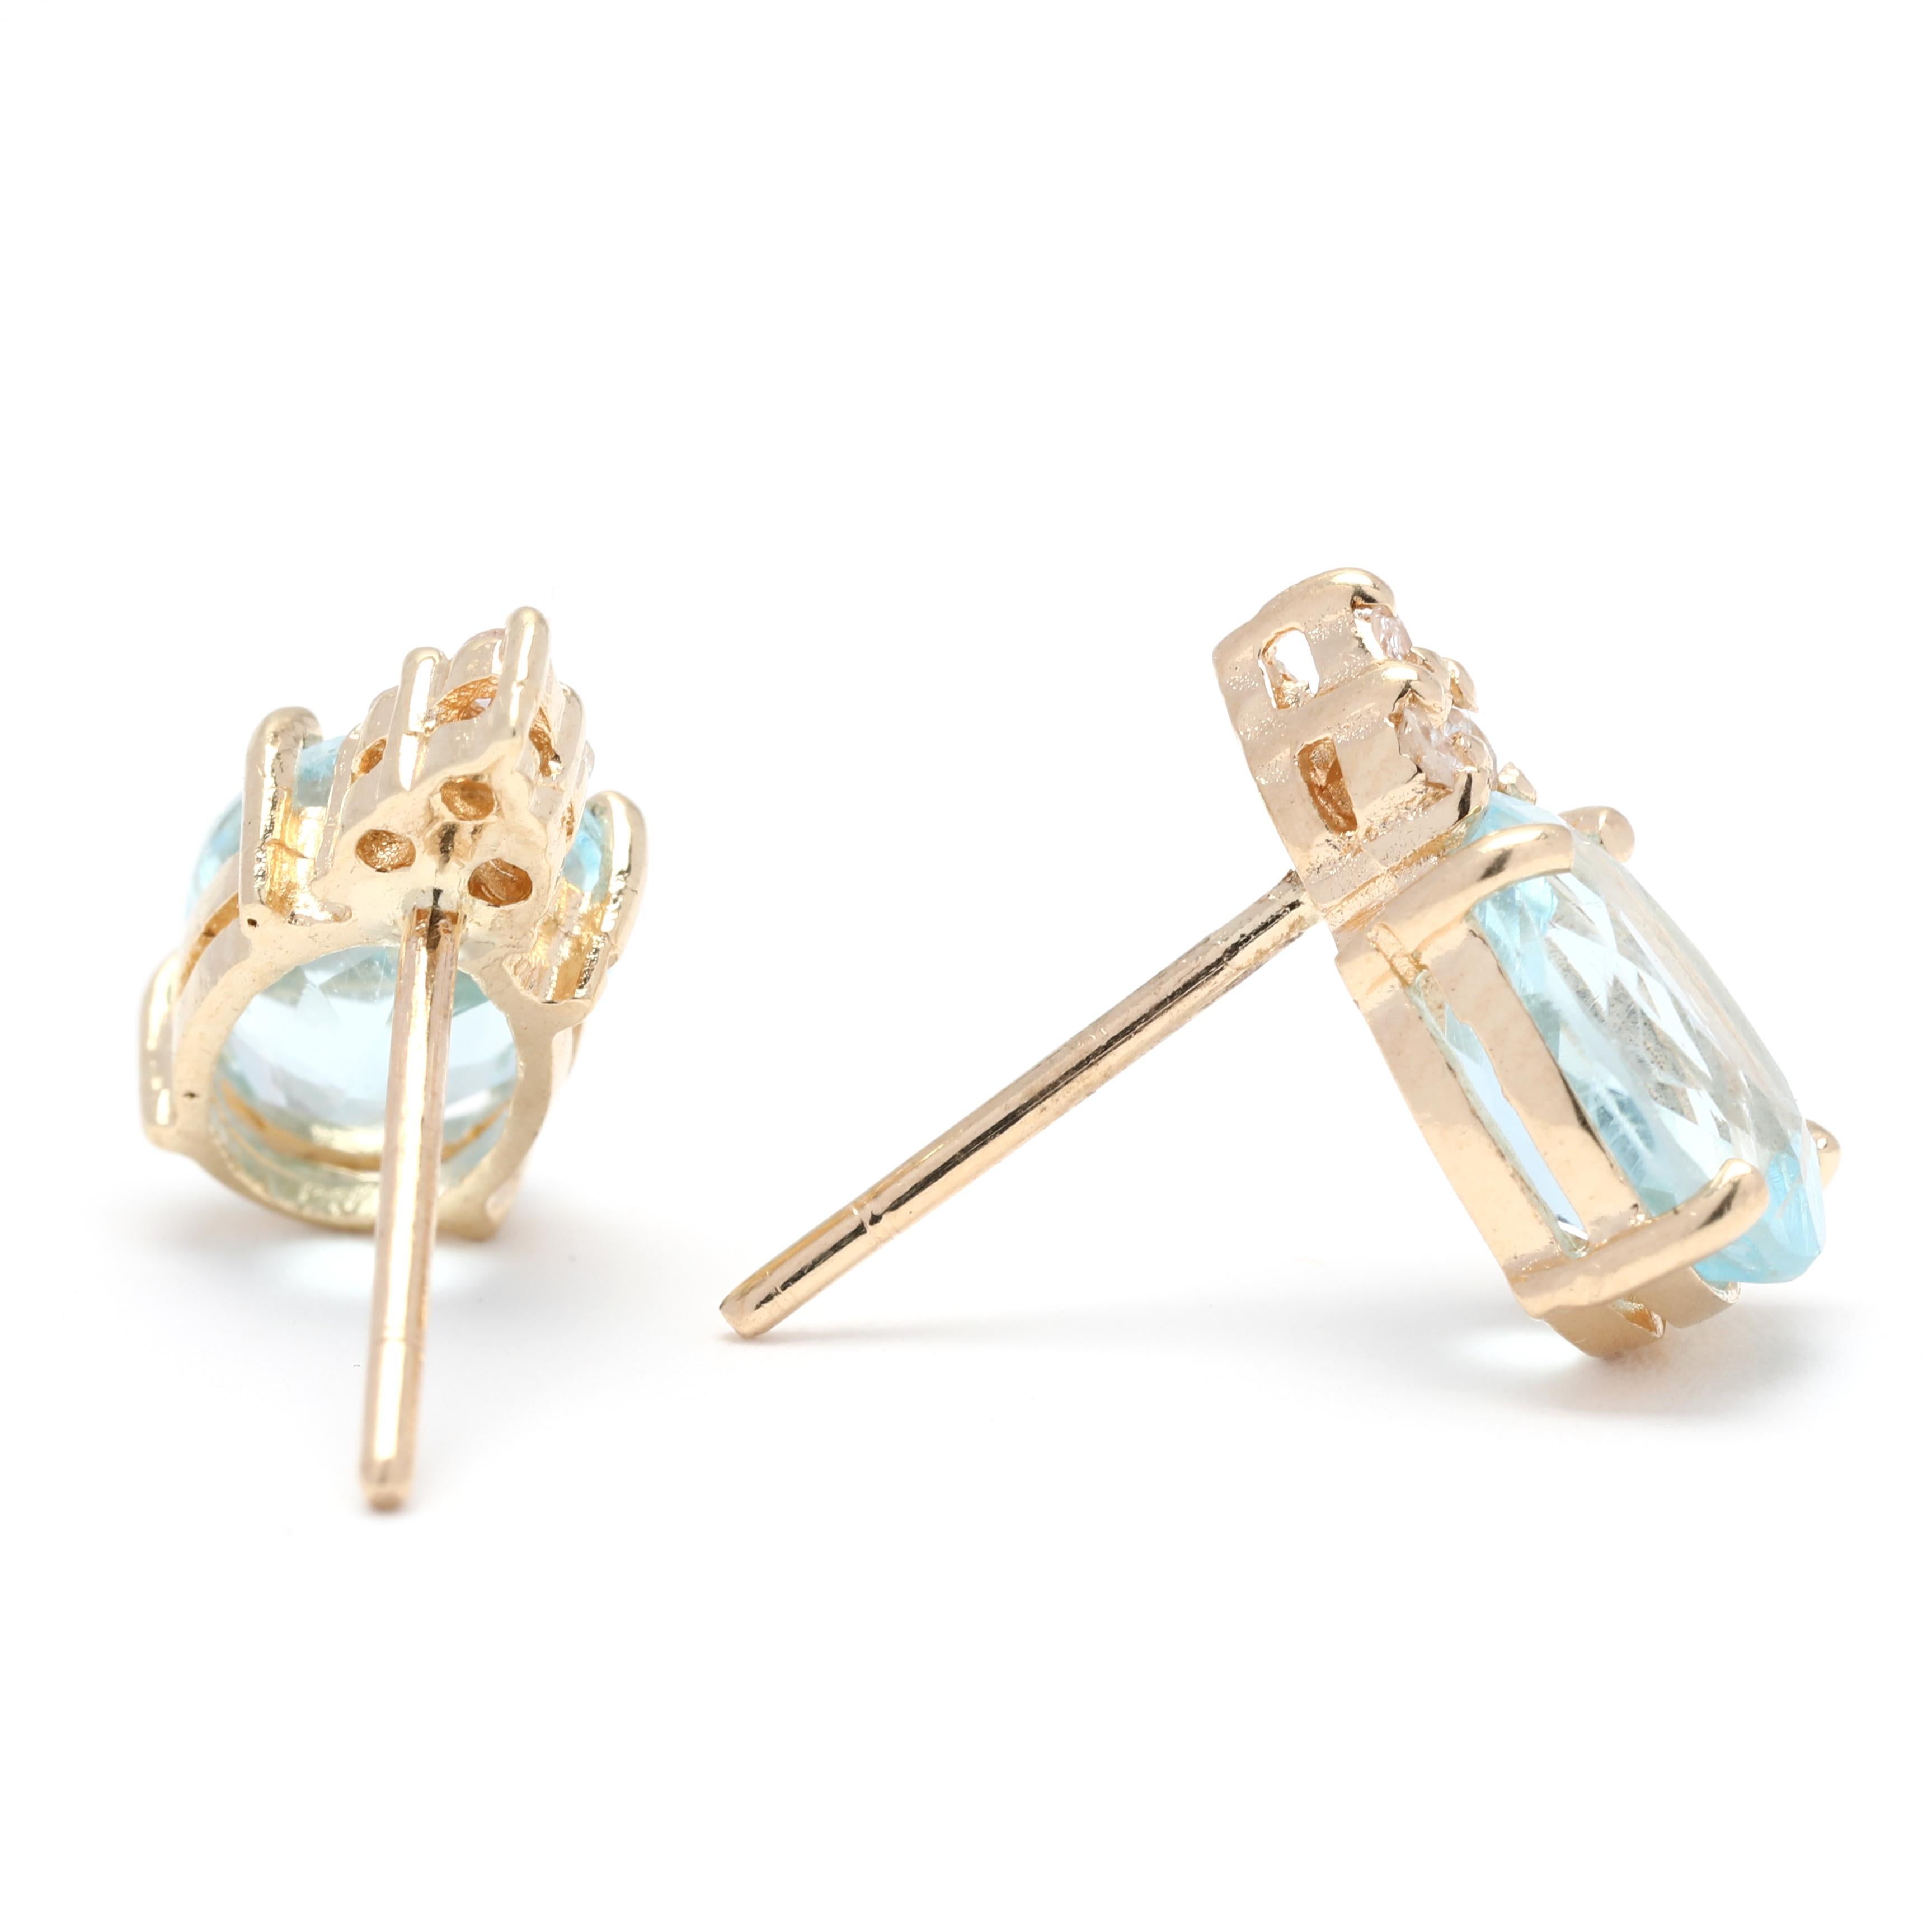 Diese atemberaubenden Blautopas-Diamant-Ohrstecker sind ein schönes und elegantes Accessoire für jede Gelegenheit. Die aus 14-karätigem Gelbgold gefertigten Ohrringe sind mit zwei blauen Topas-Steinen von 1,62 Karat besetzt, die zusammen 3,25 Karat